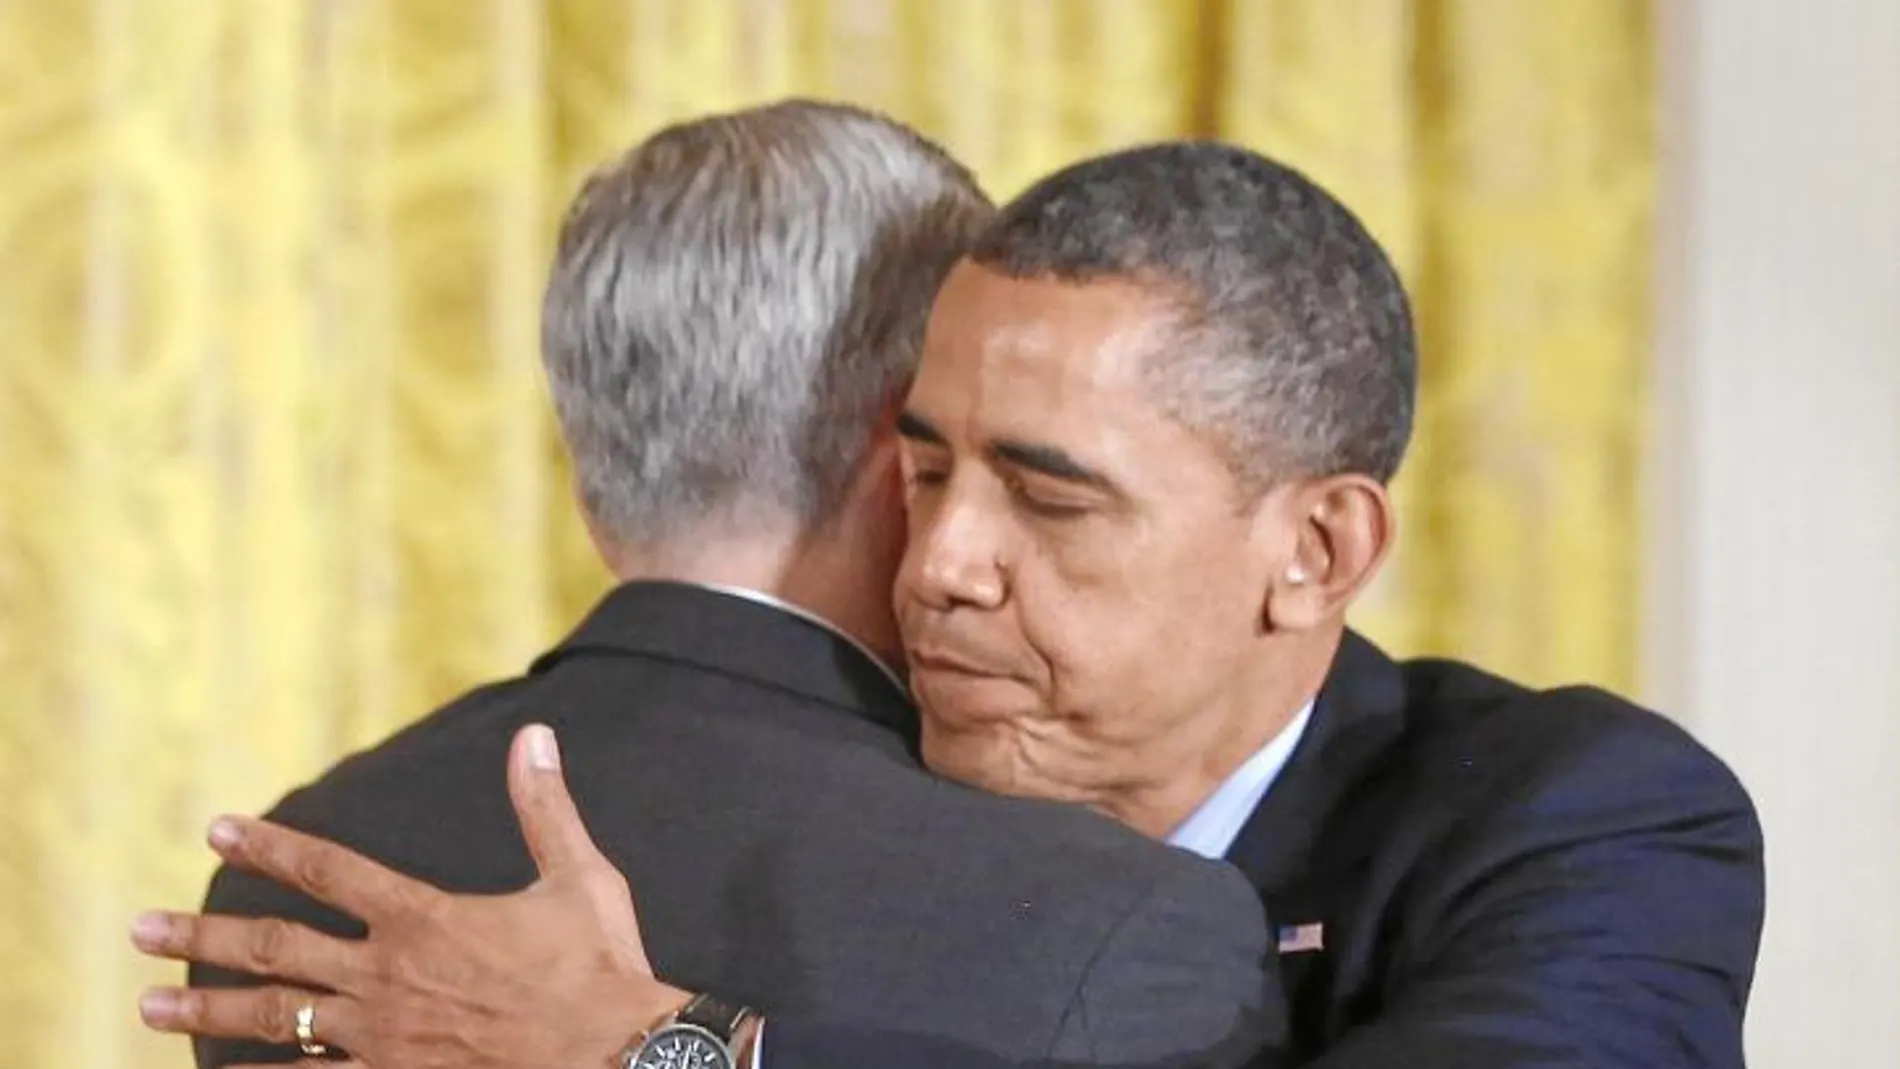 El presidente de EE UU, Barack Obama, abraza a Denis McDonough, nombrado nuevo jefe de Gabinete, ayer en la Casa Blanca